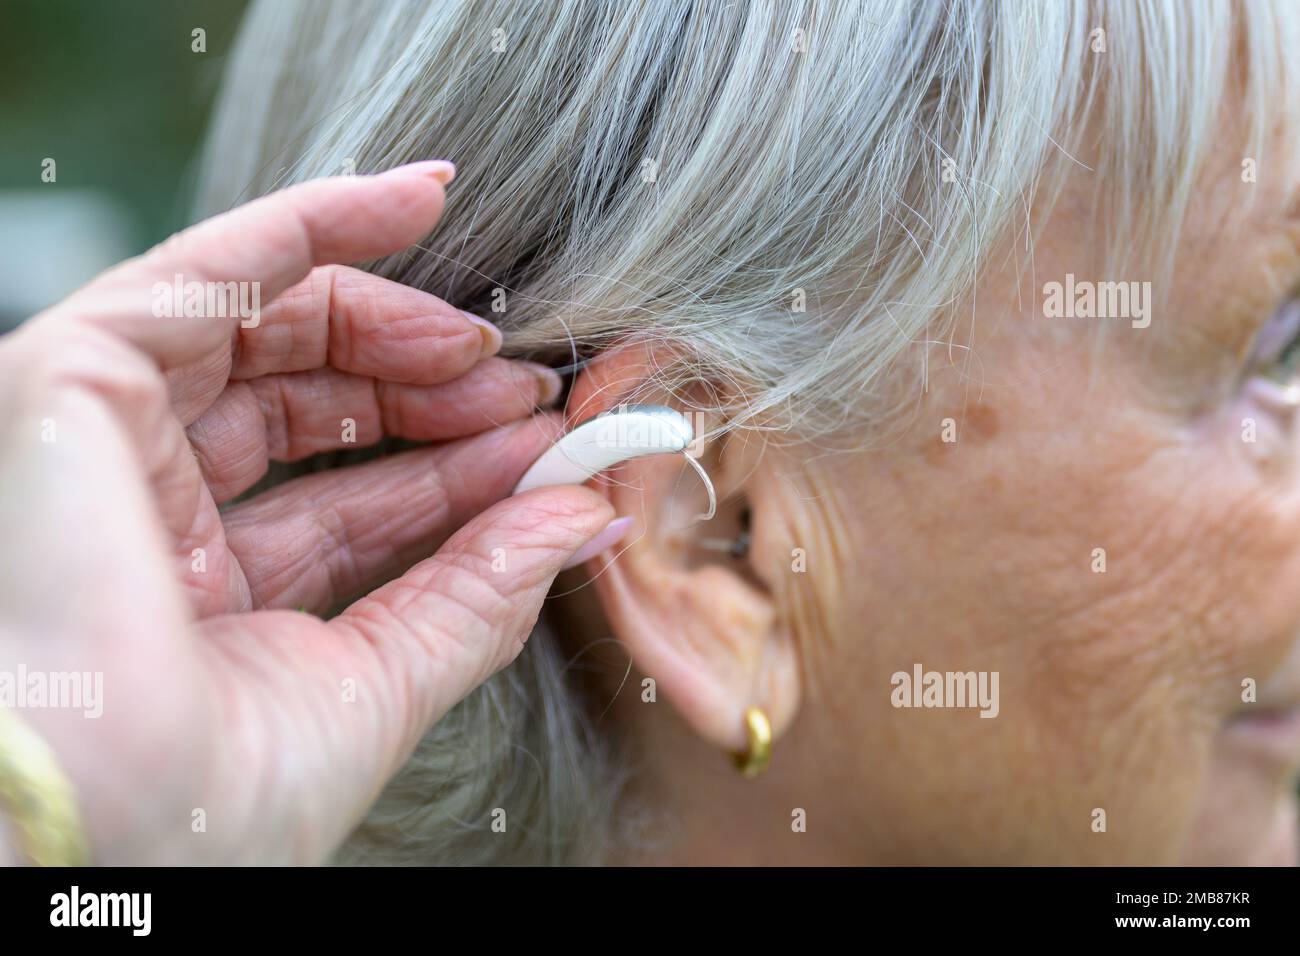 Ältere, grauhaarige, taube Dame in den 80ern, mit einem Hörgerät im Ohr, das sie gerade reingesteckt hat Stockfoto